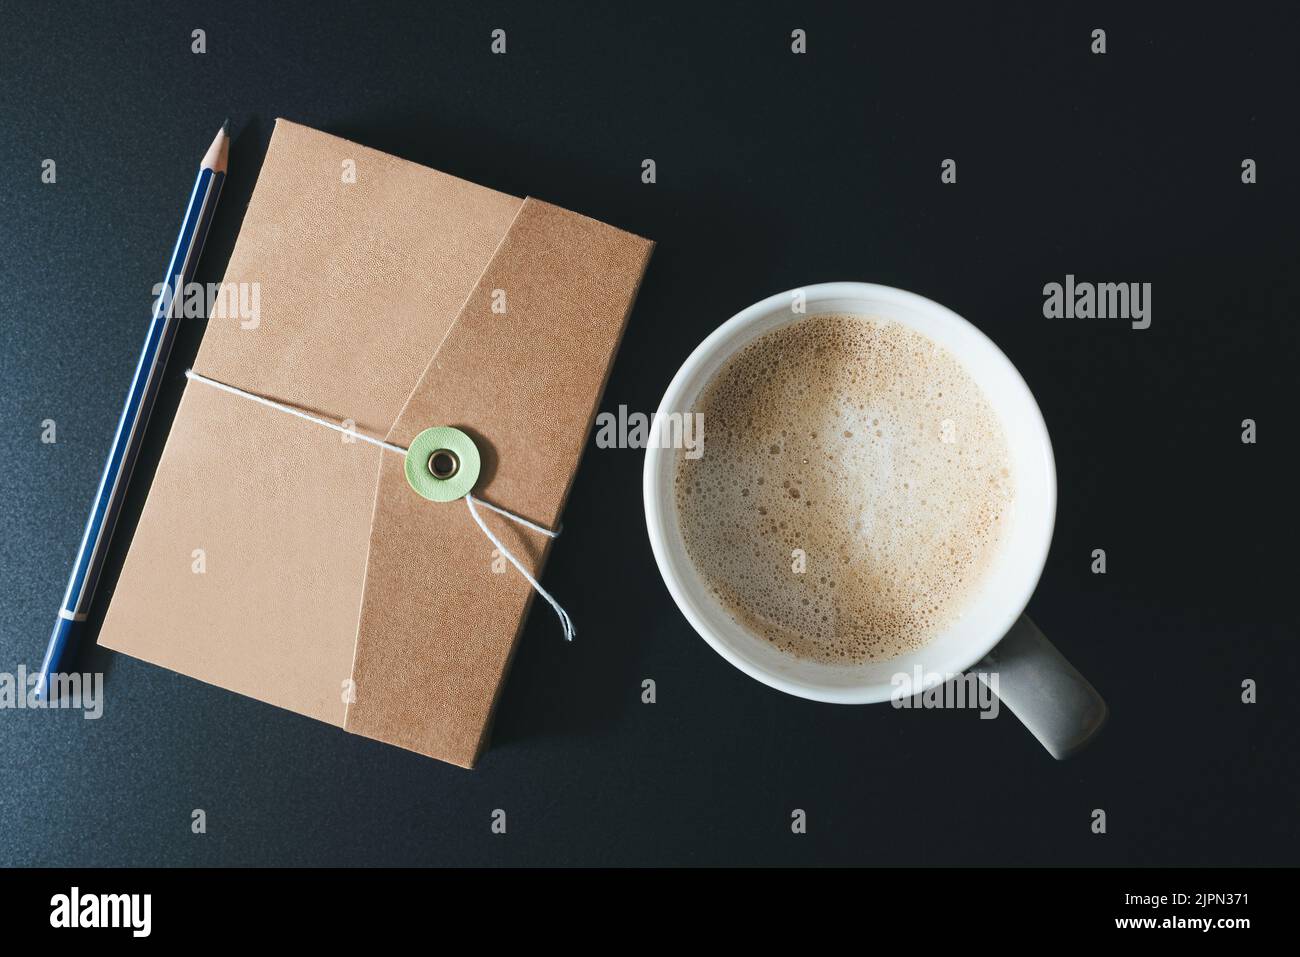 vue de haut en bas du journal, du crayon et de la tasse de café sur une table sombre Banque D'Images